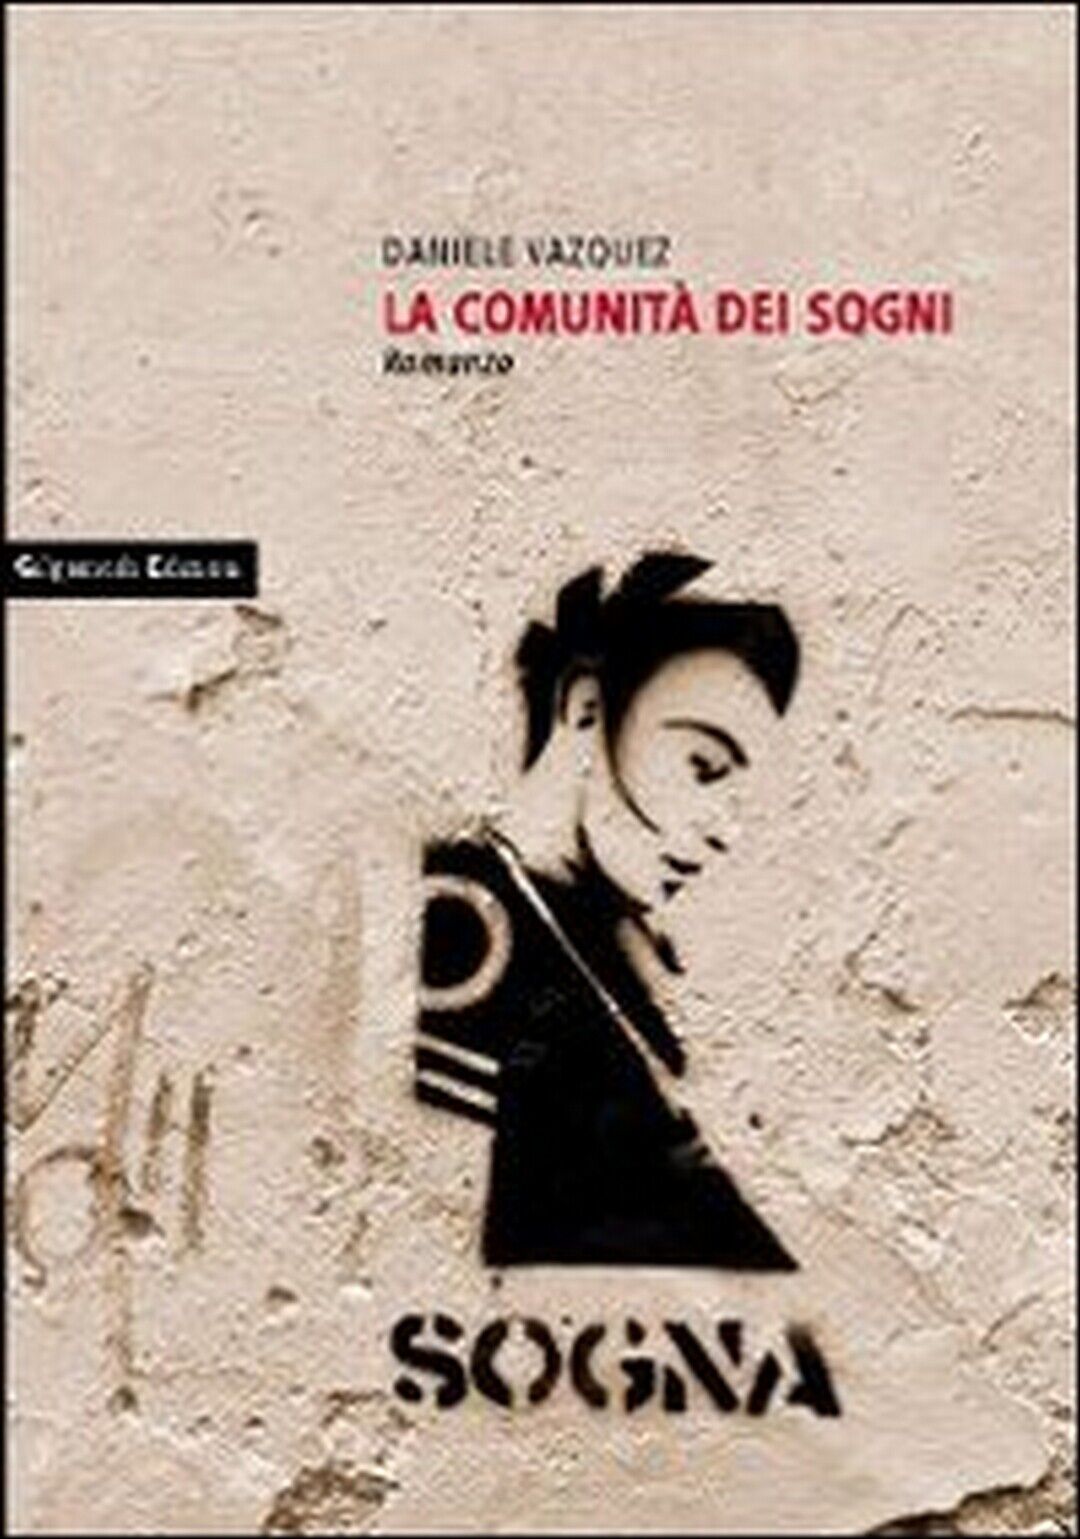 La comunit? dei sogni  di Daniele Vazquez,  2012,  Gilgamesh Edizioni